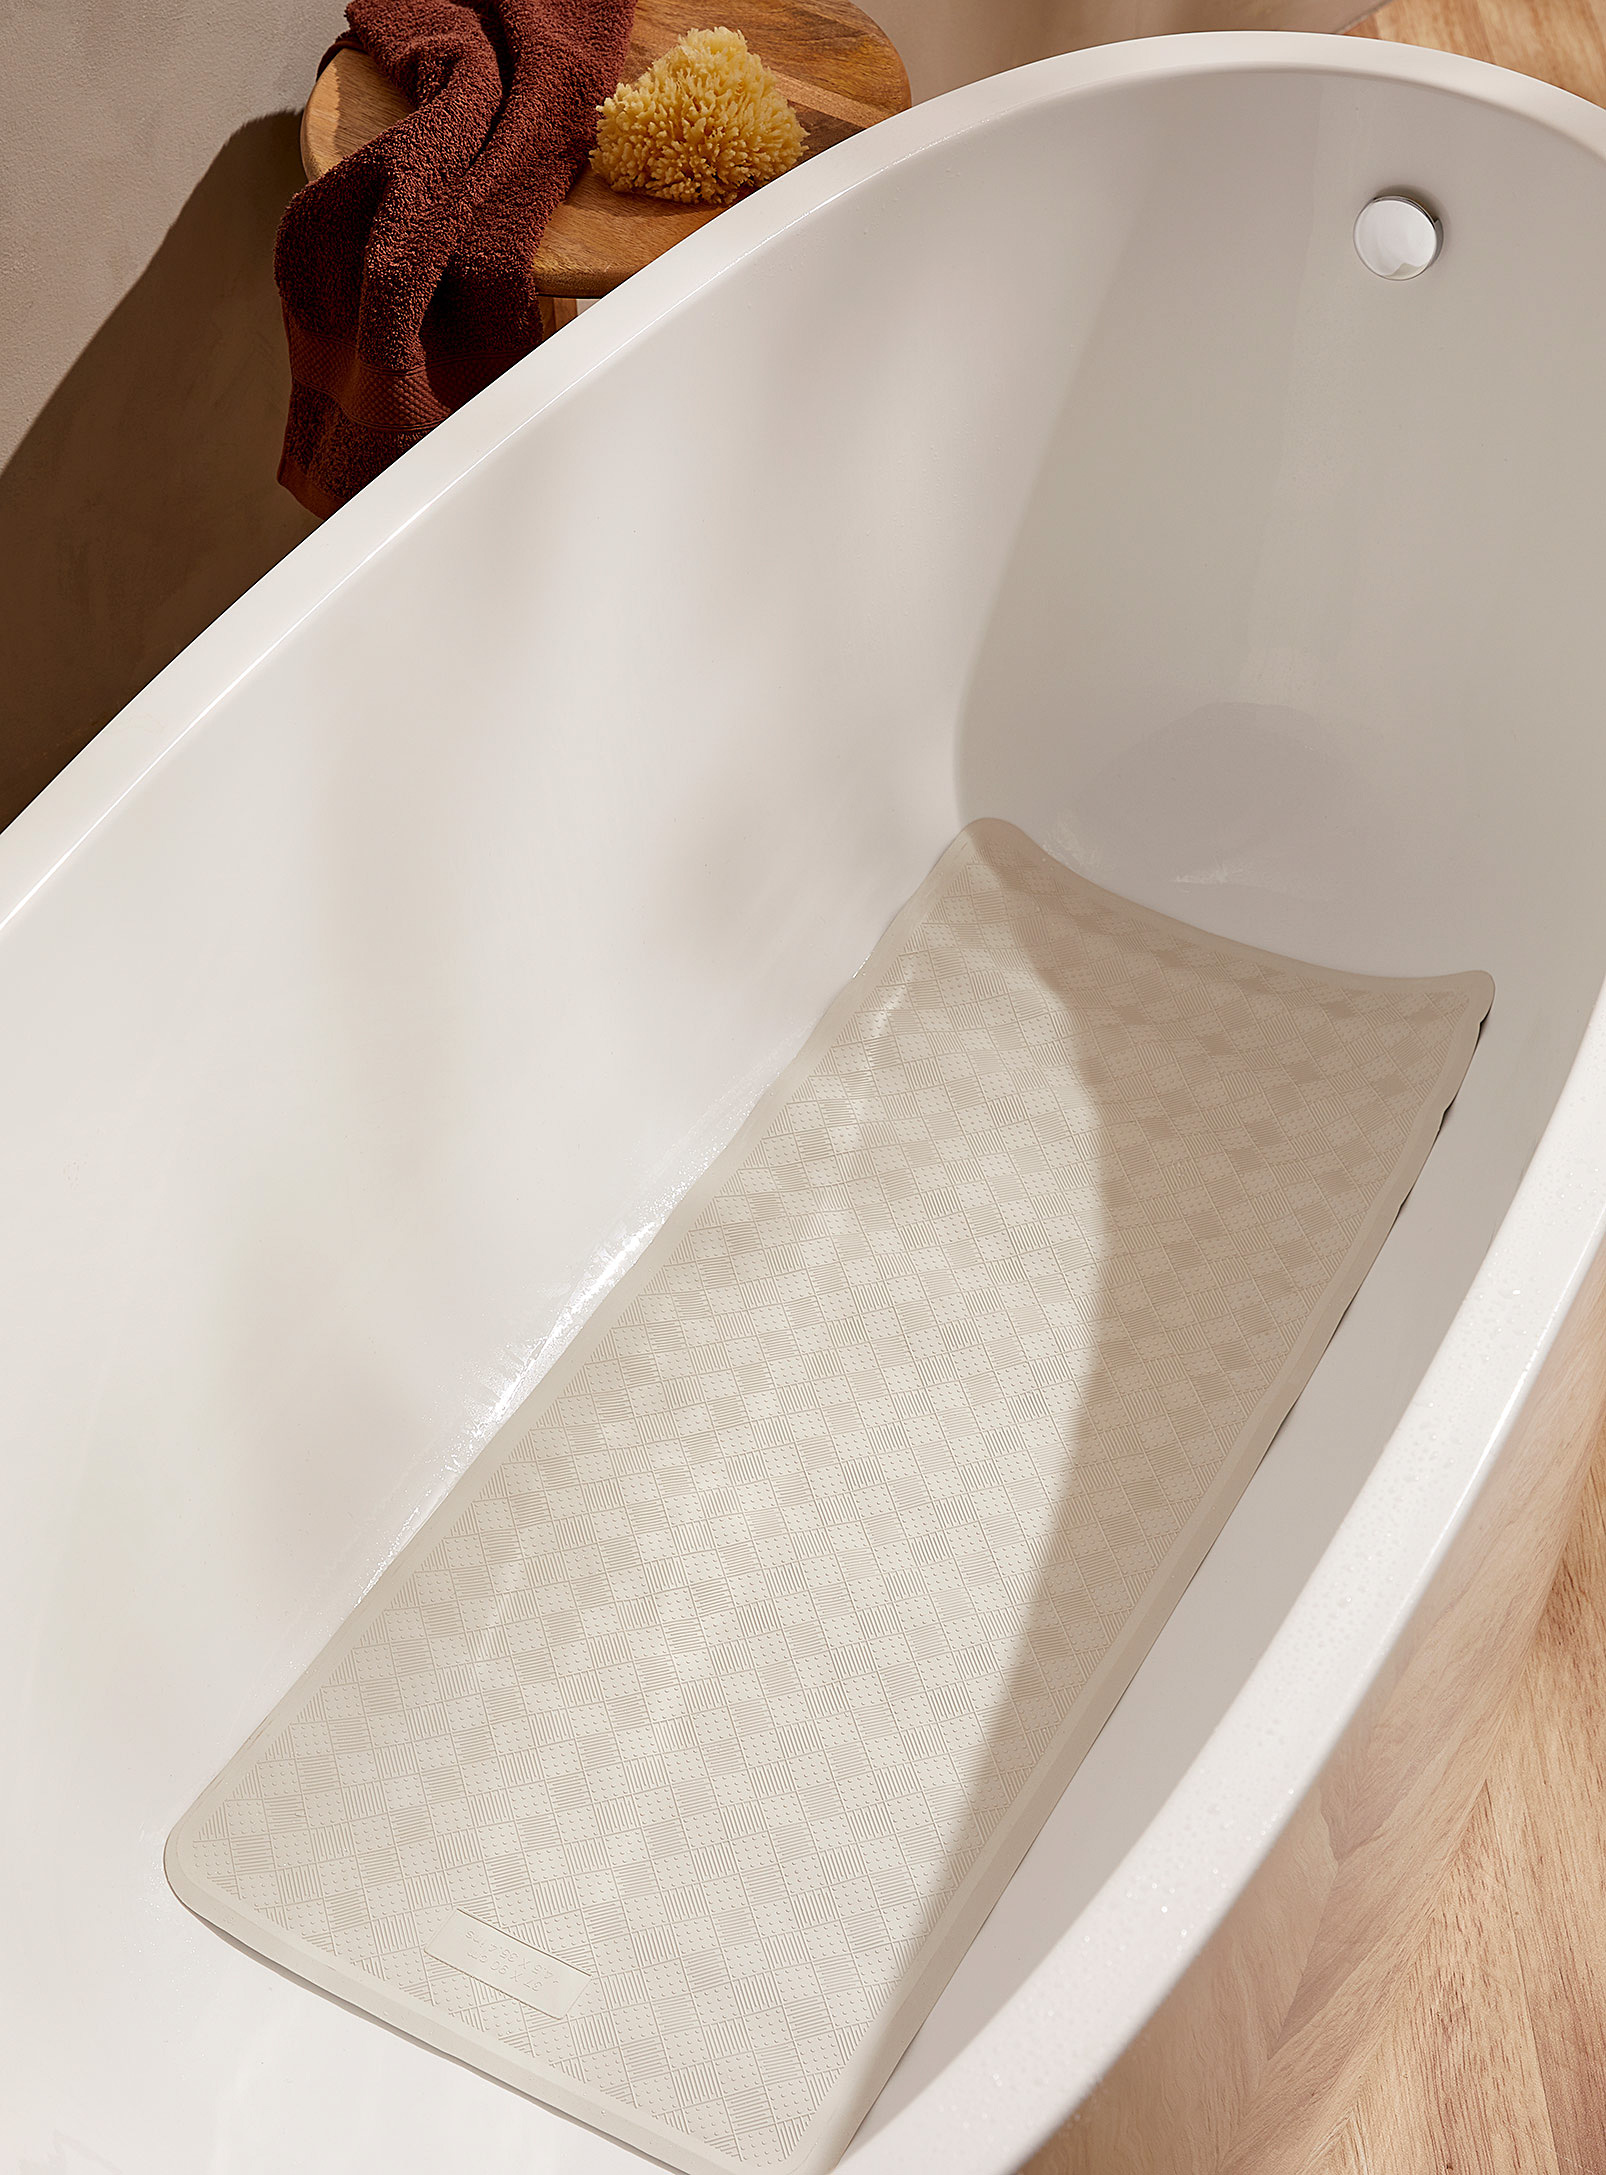 Simons Maison - Ivory rubber bath mat 37 x 90 cm